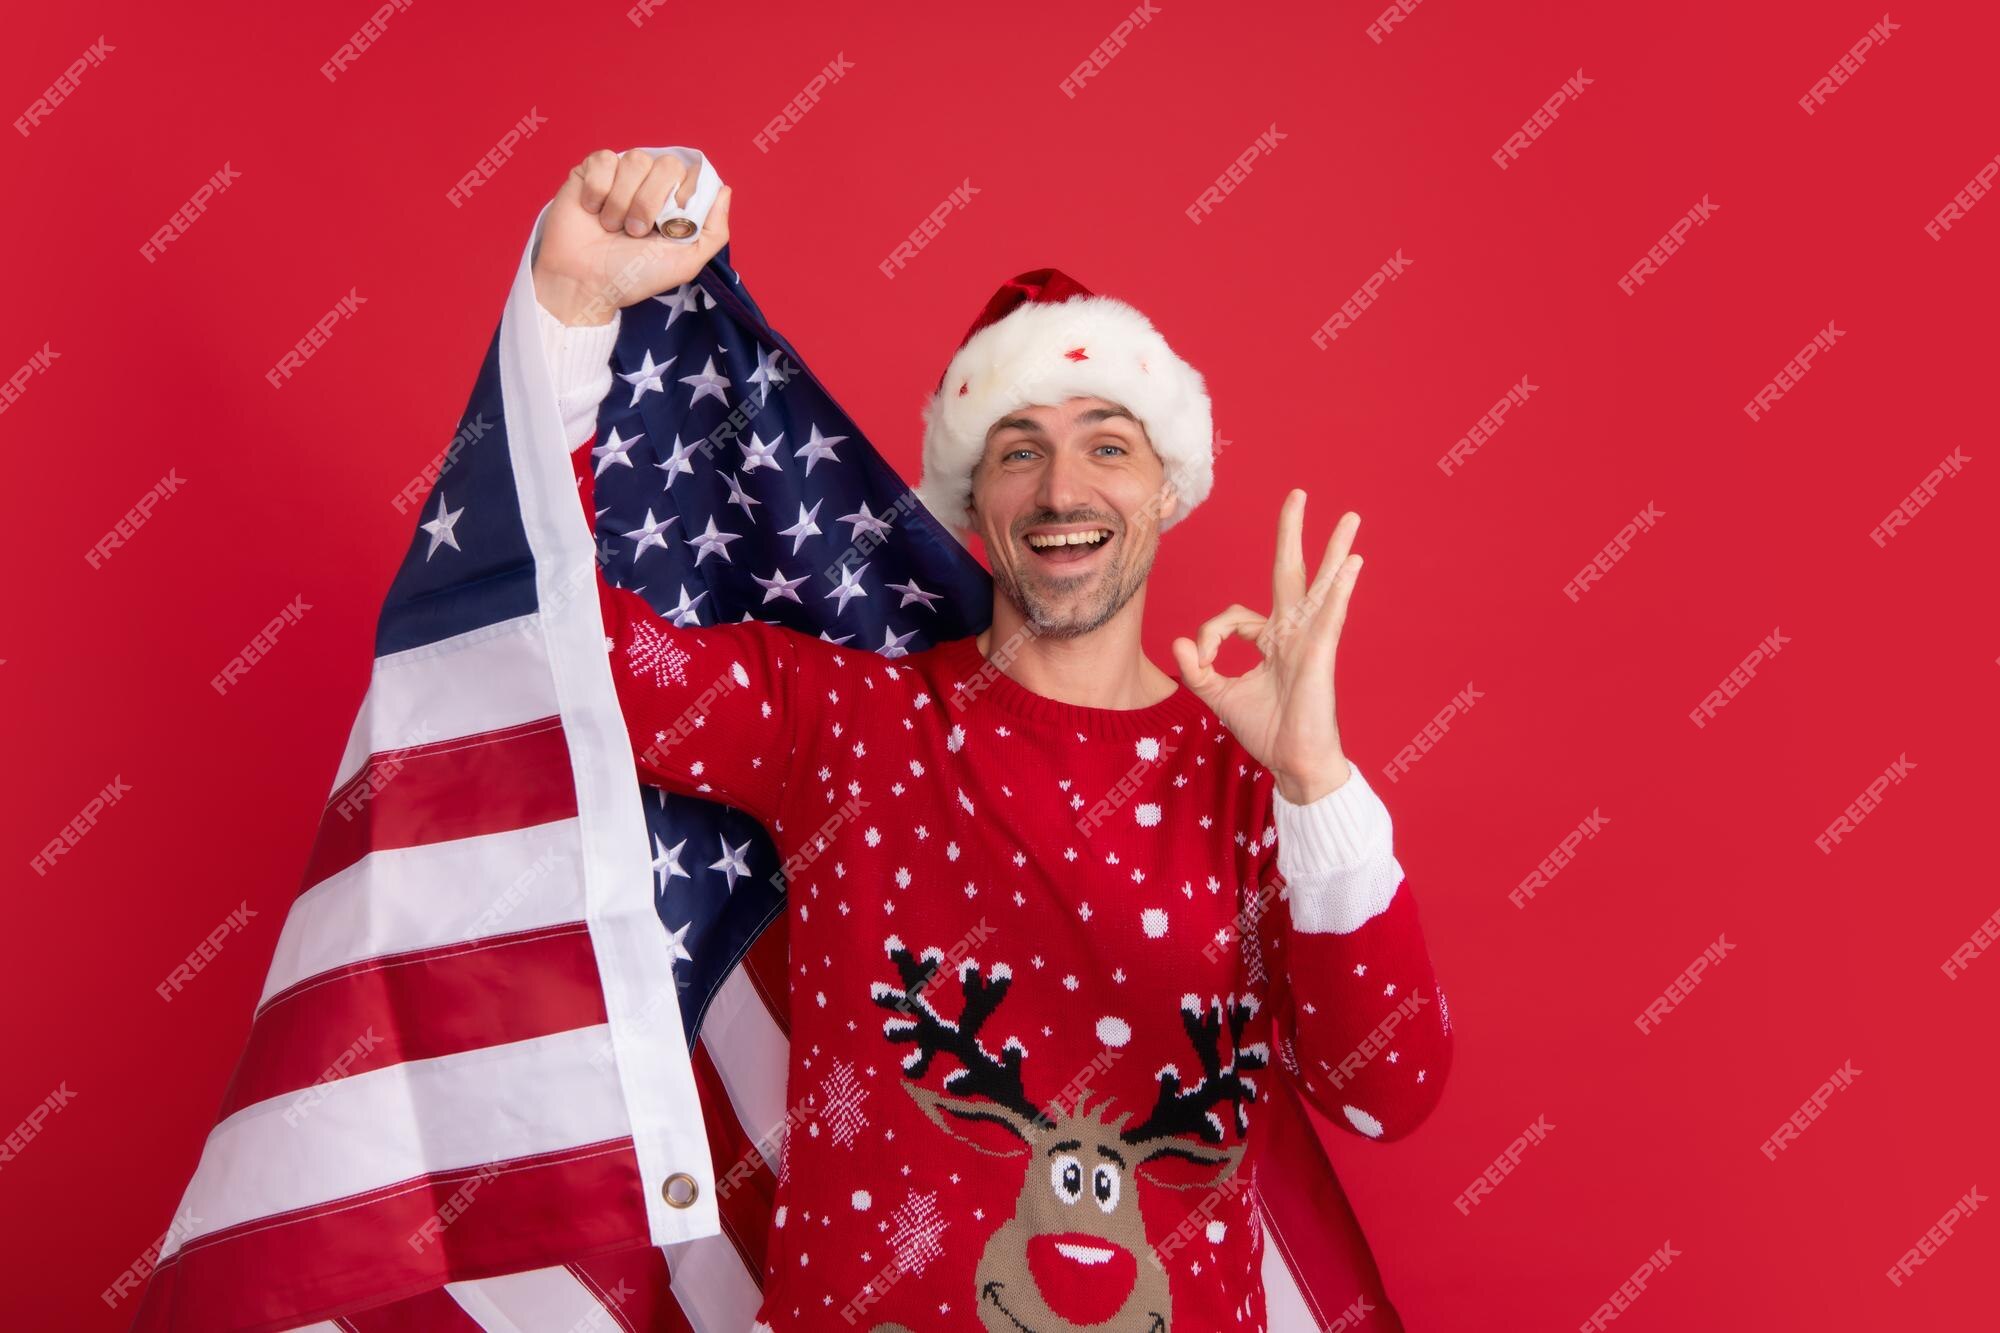 Hãy xem những bức hình nền tuyệt đẹp về Santa Claus cùng với cờ Mỹ rực rỡ. Đây là những bức hình nền tuyệt vời để thể hiện lòng tự hào và sự tôn trọng của bạn đối với Hoa Kỳ. Hãy cùng chung tay đón Giáng sinh ấm áp này.